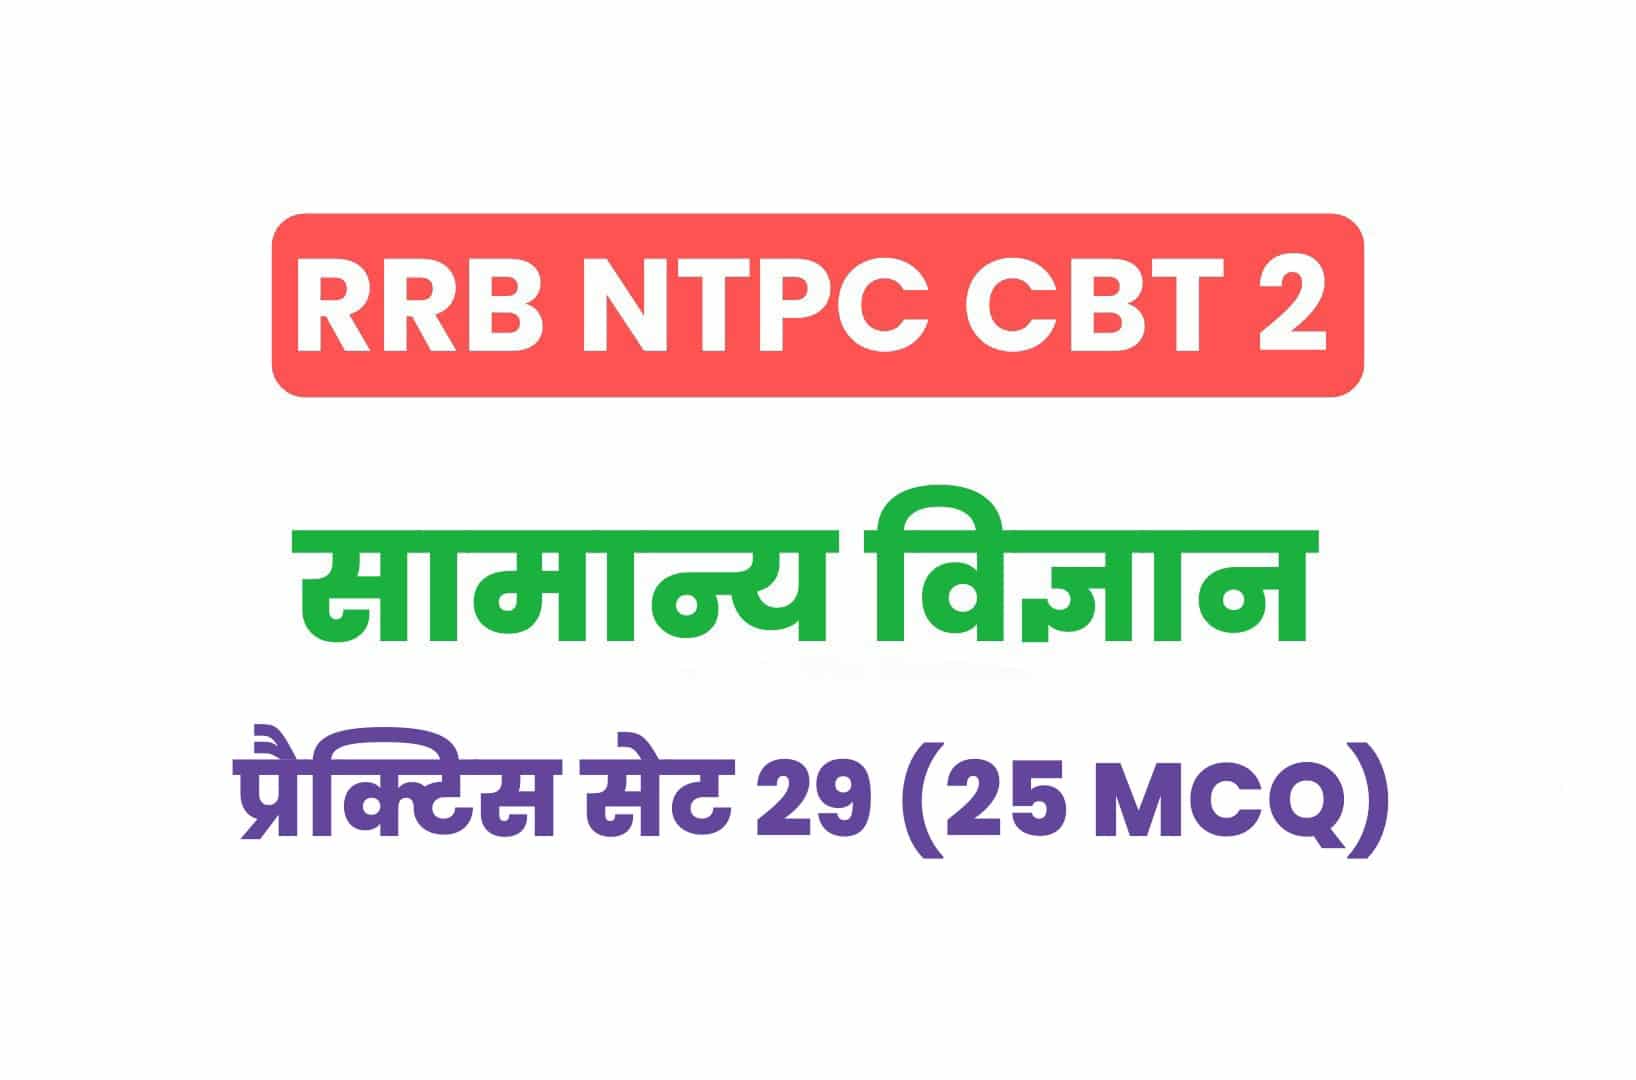 RRB NTPC CBT 2 Science प्रैक्टिस सेट 29: सामान्य विज्ञान के महत्वपूर्ण प्रश्नों का करें अध्ययन